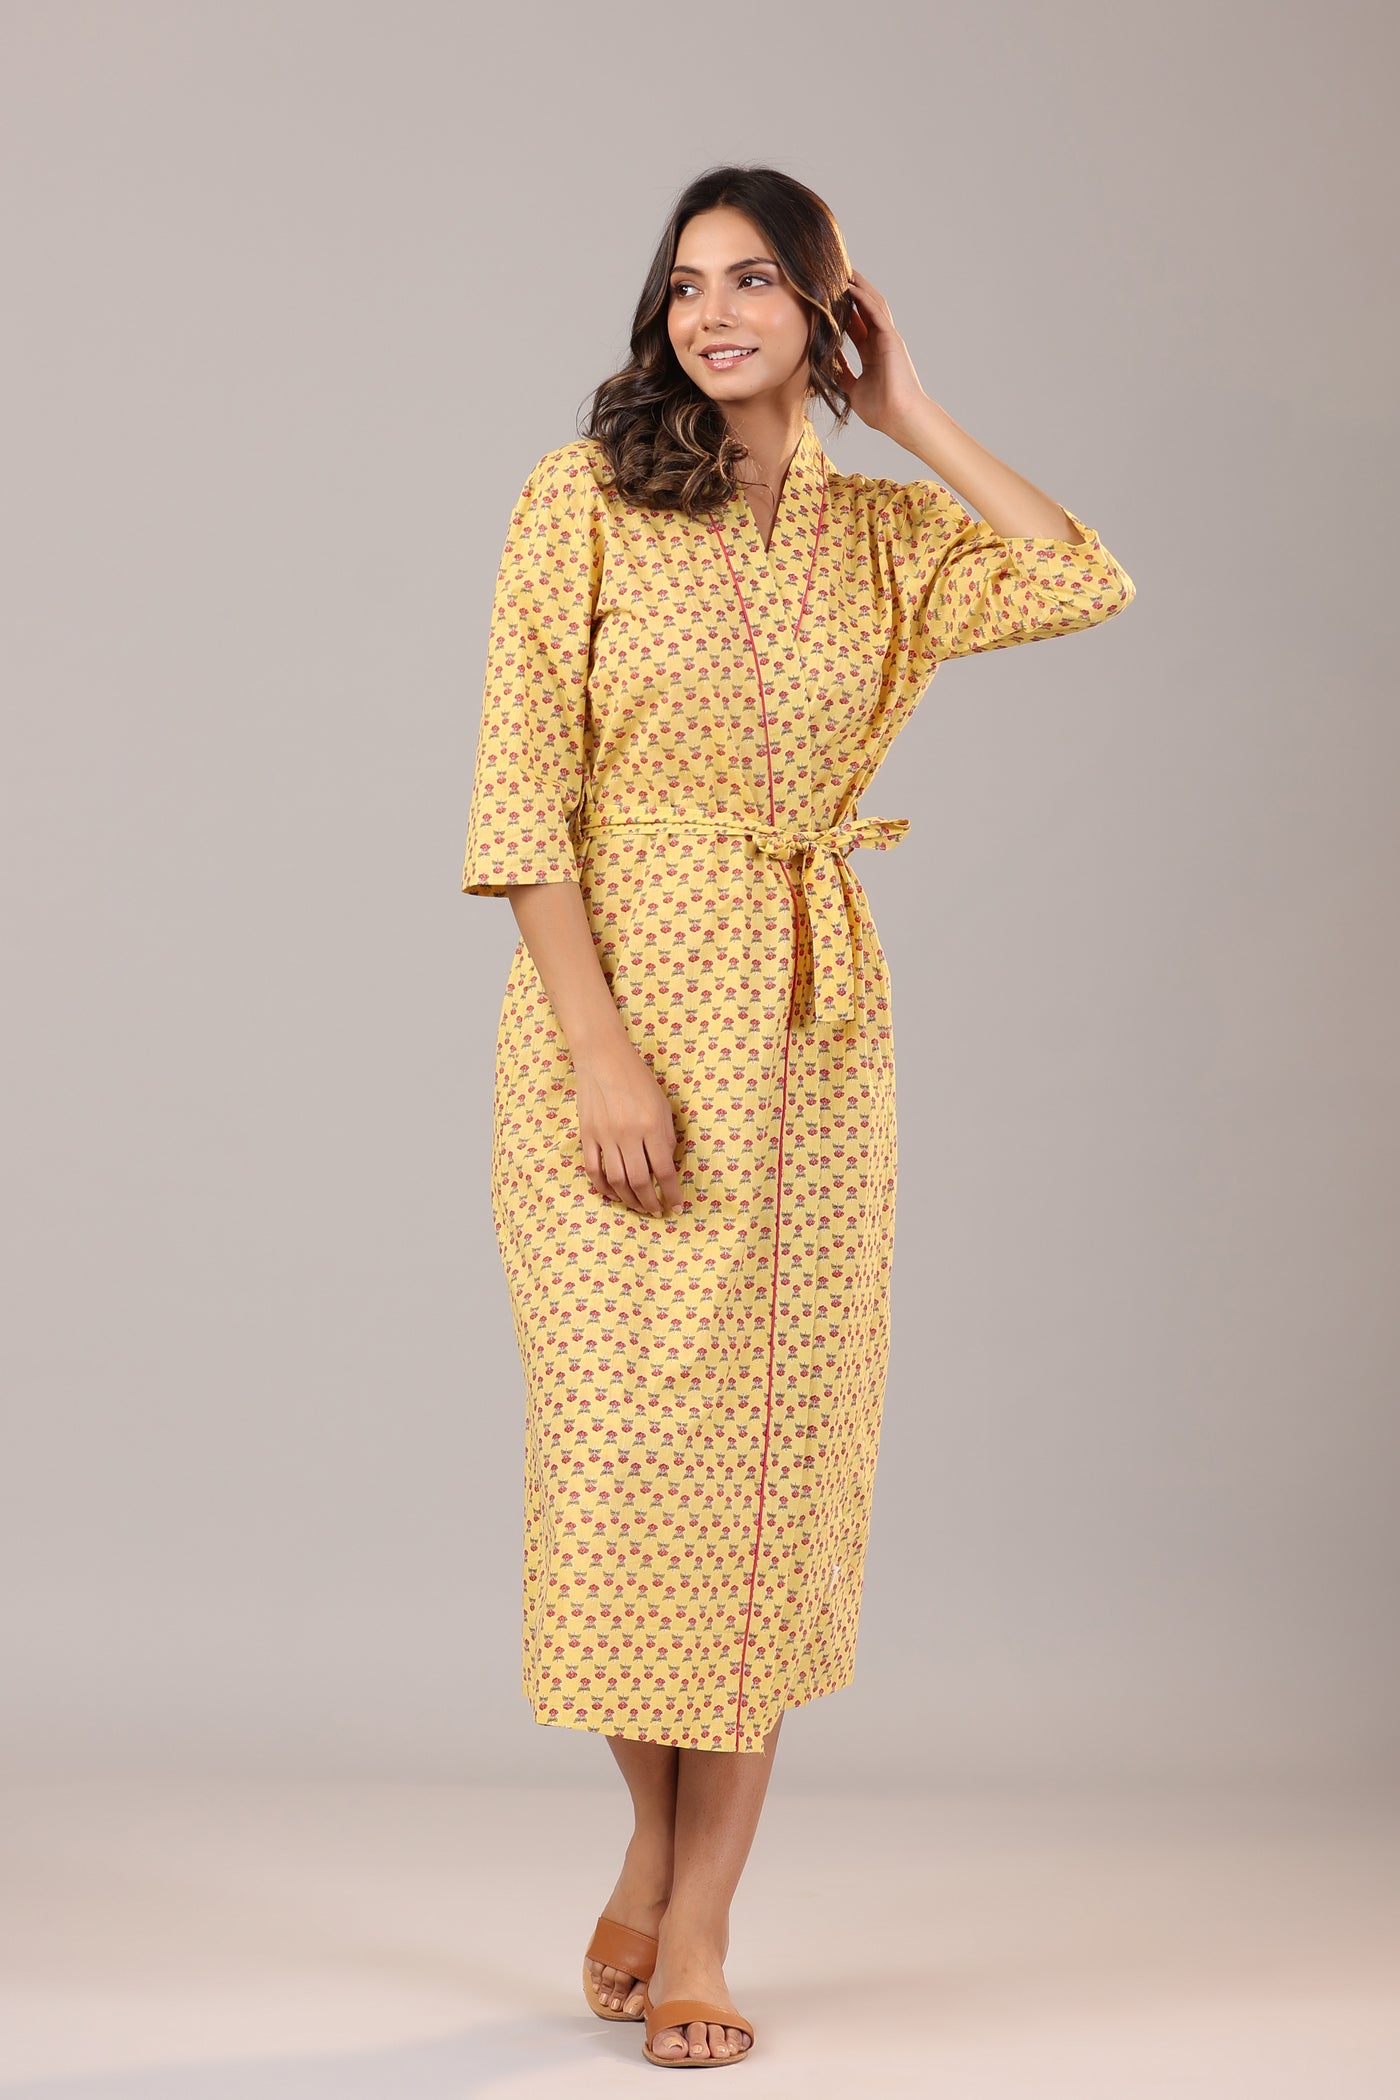 Floral Jaipuri Booti on Yellow Cotton Robe